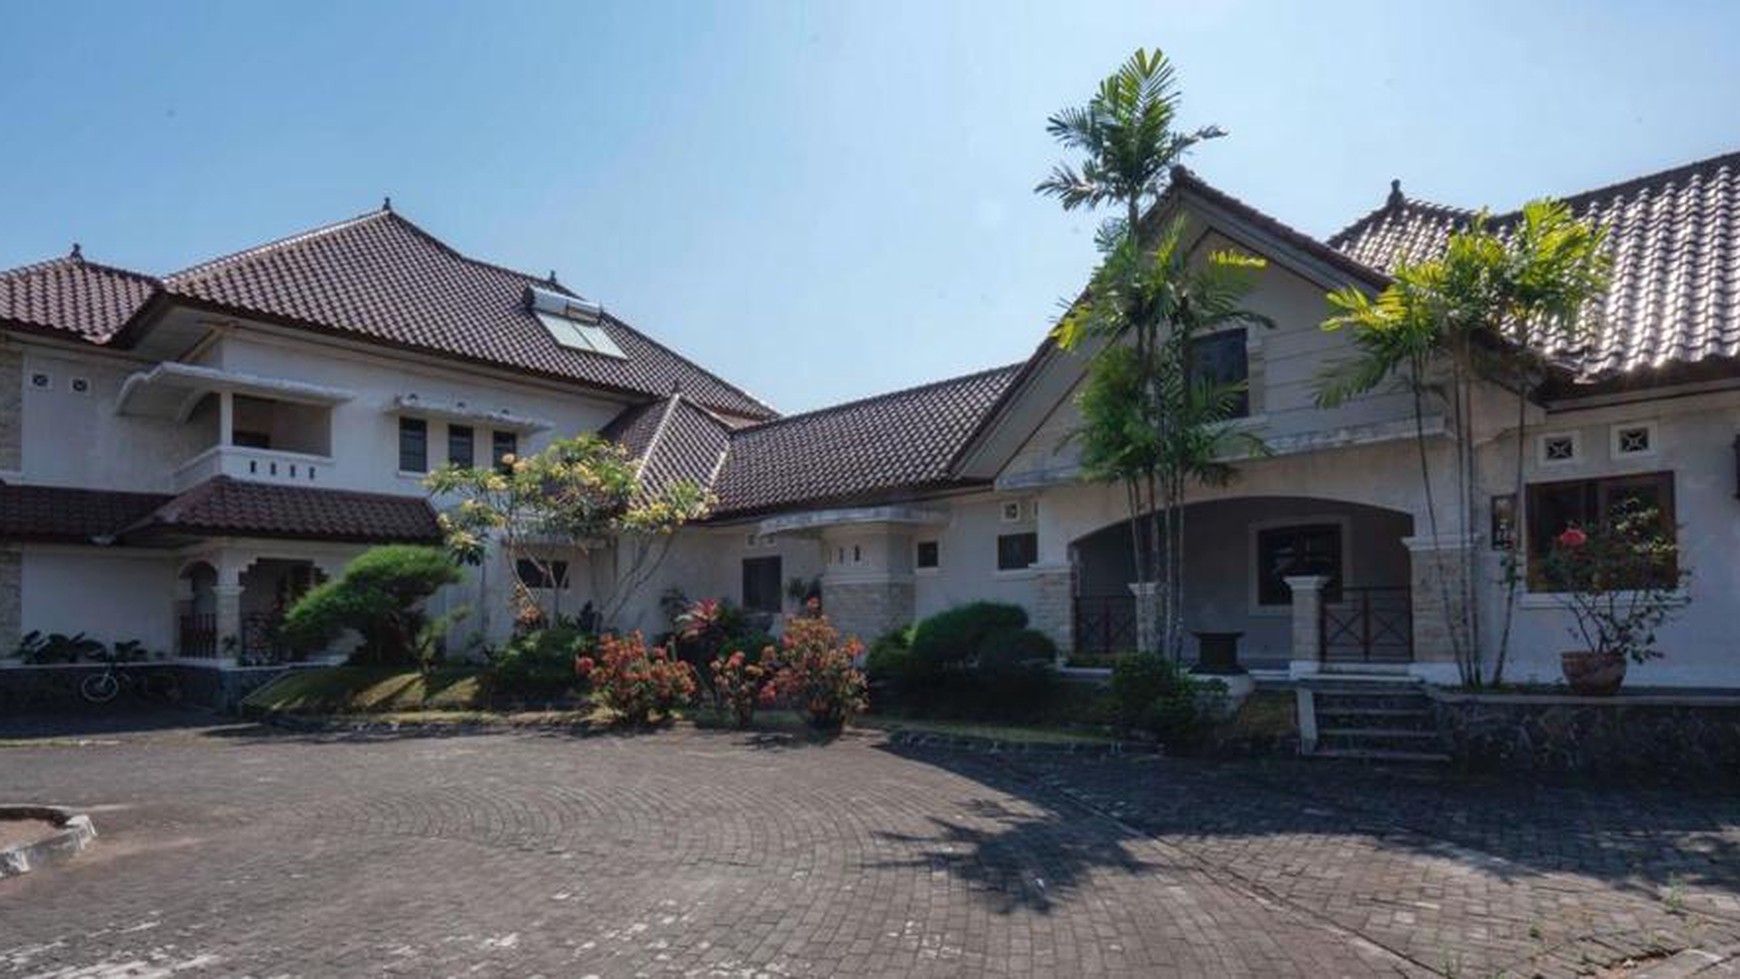 Rumah peristirahatan yang Asri & Sejuk di Pesona Merapi Kaliurang Yogyakarta